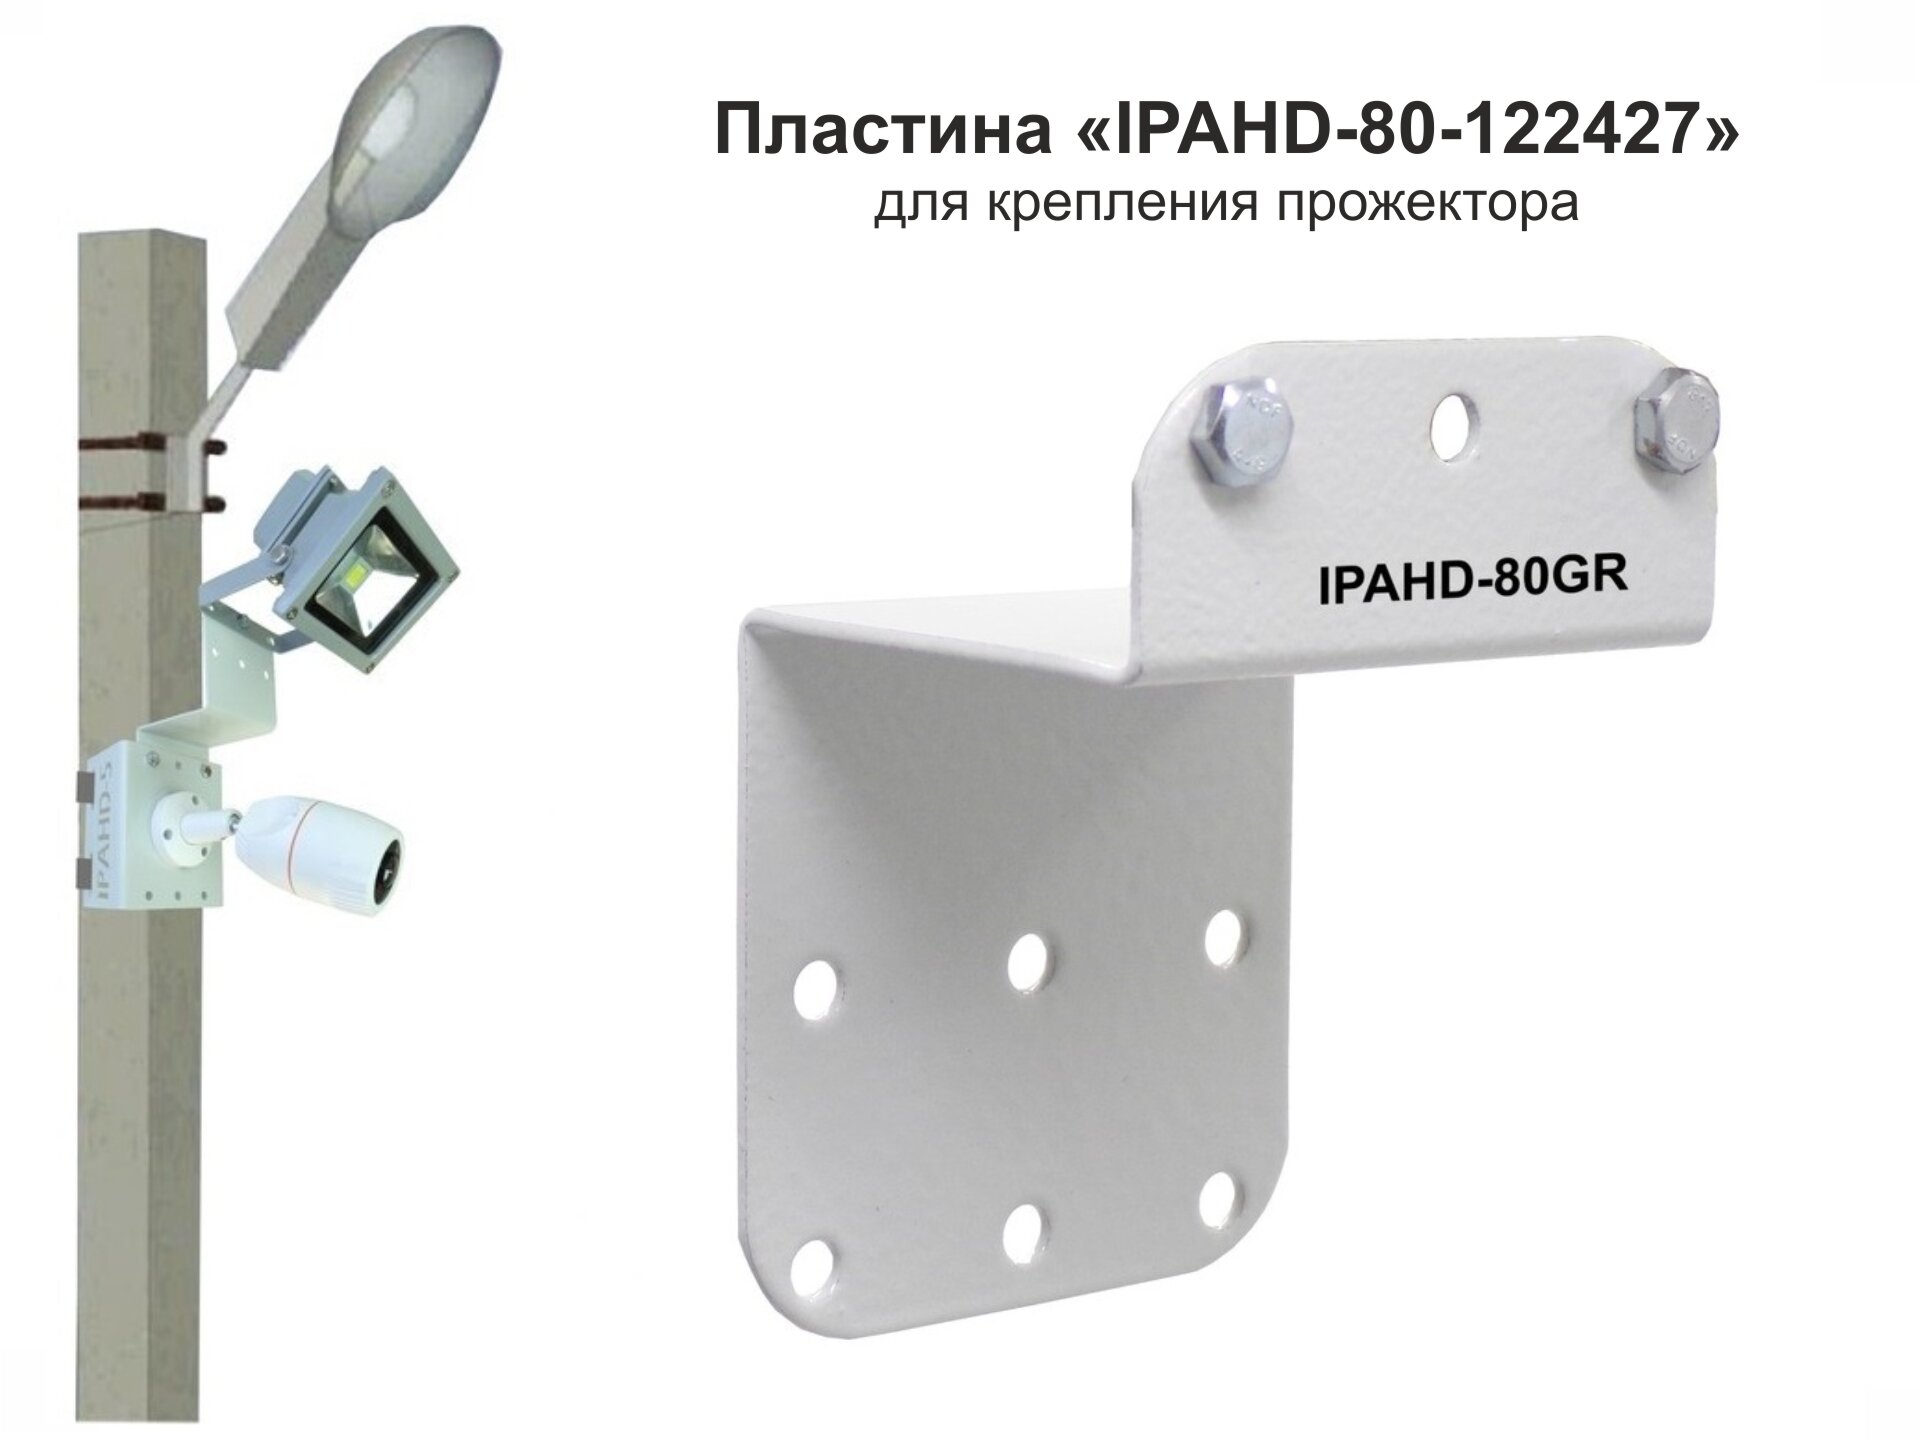 Пластина для прожекторов "IPAHD-80GR-122427" на кронштейны серии "IPAHD" и "HIWOLL" с 9 отверстиями диаметром 7мм